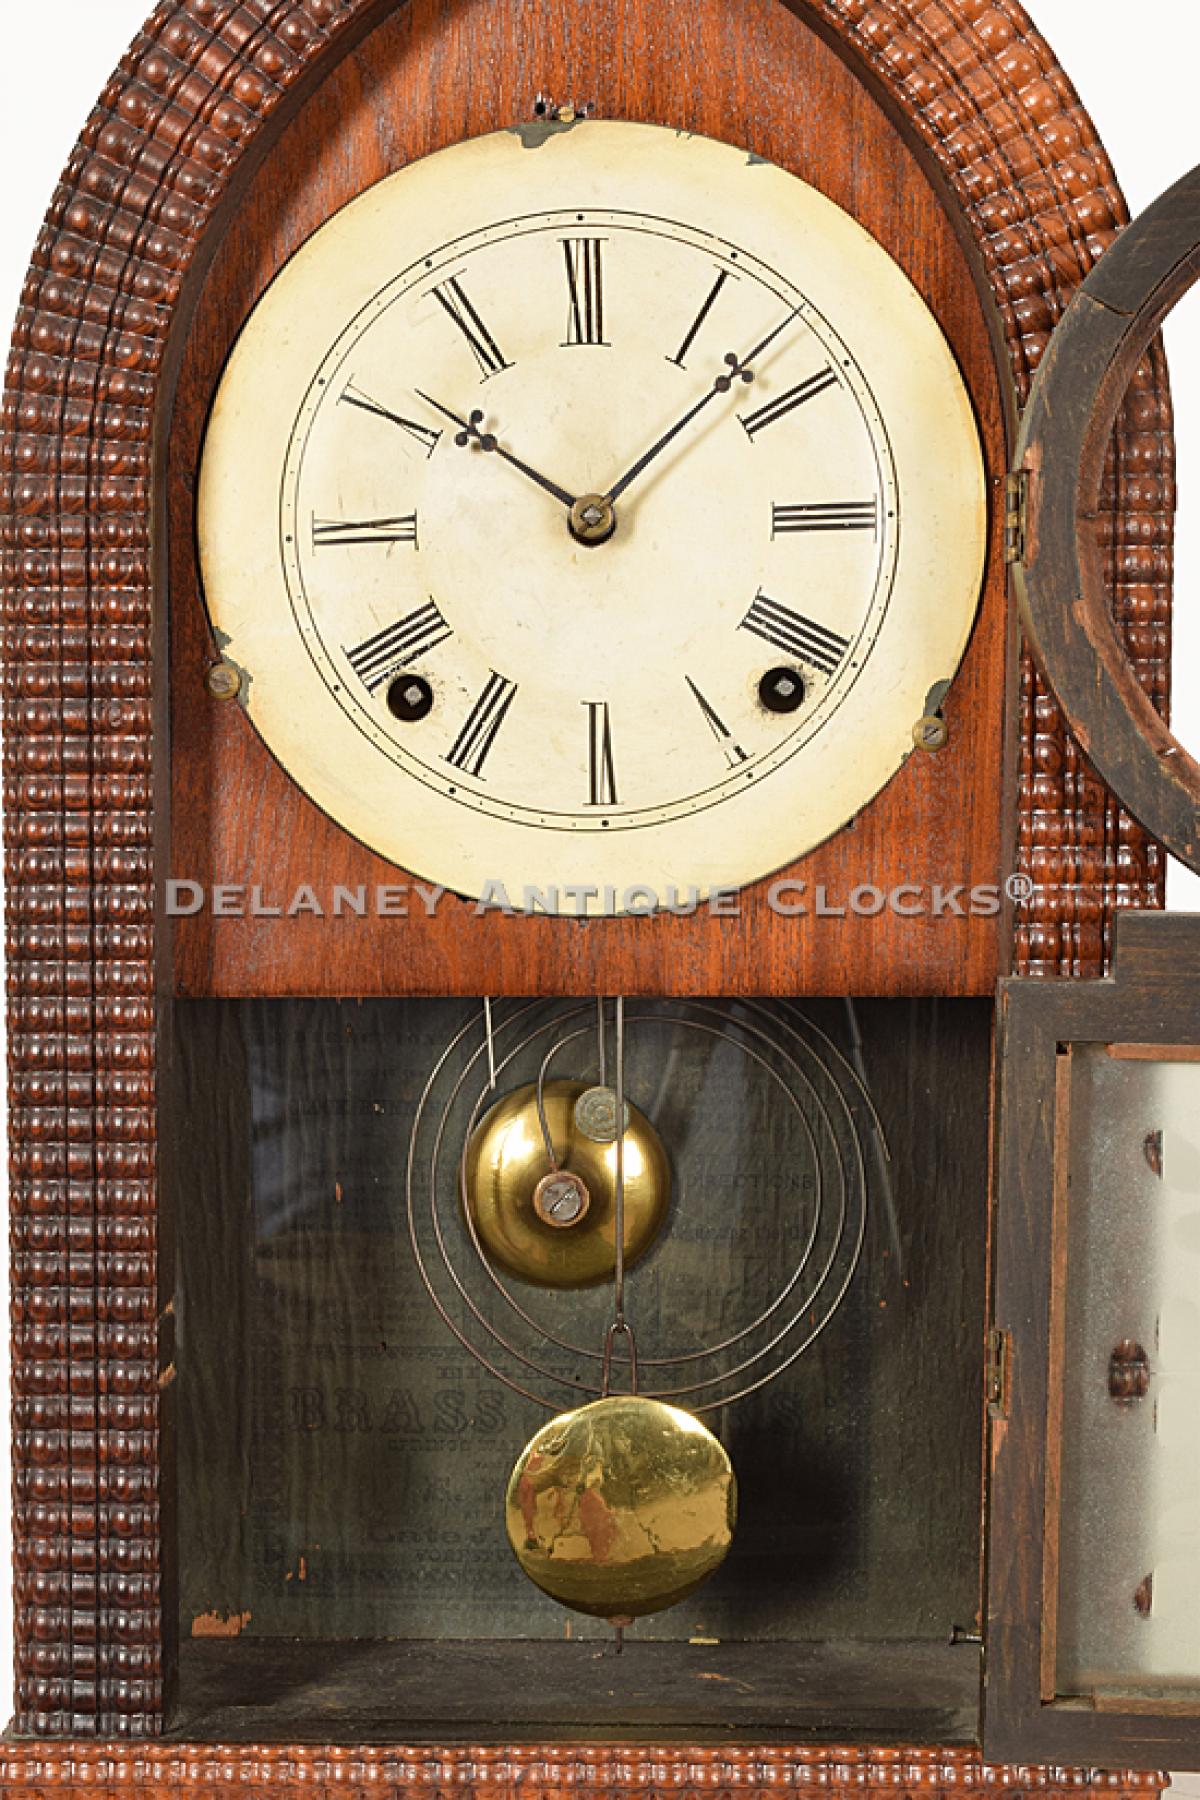 Forestville mantel clock – Antique and Vintage Clocks